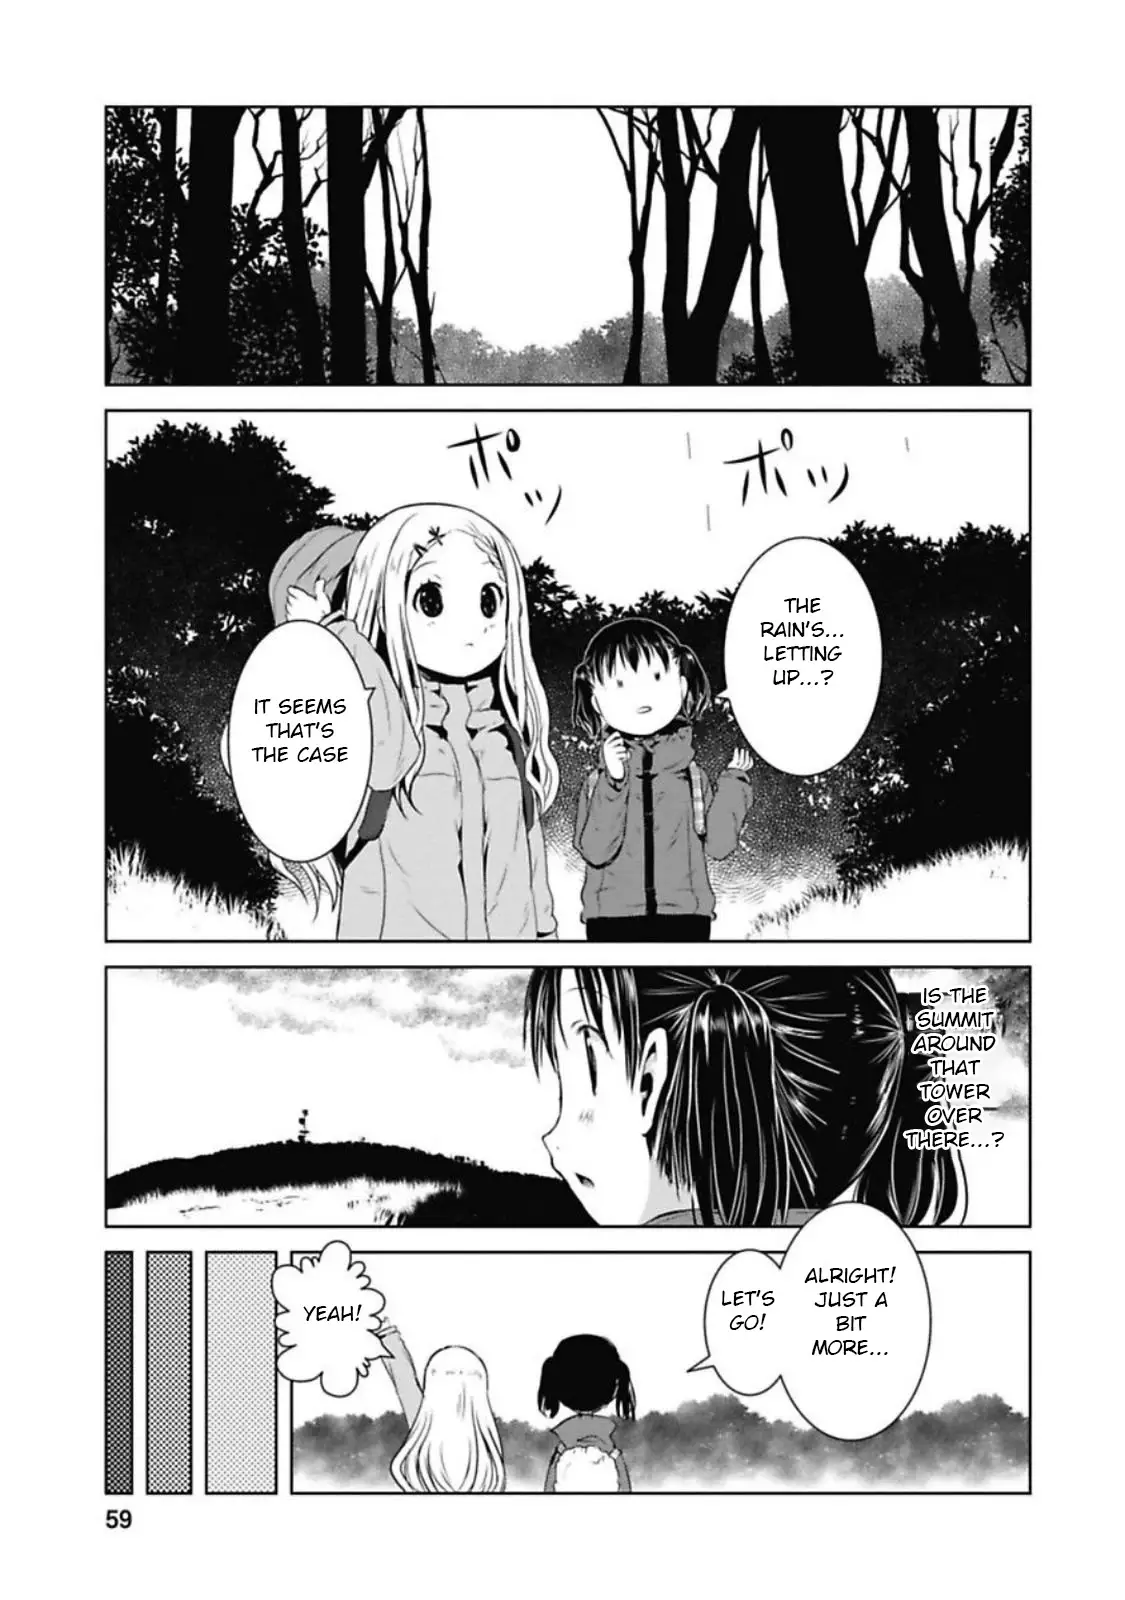 Yama No Susume - 35 page 13